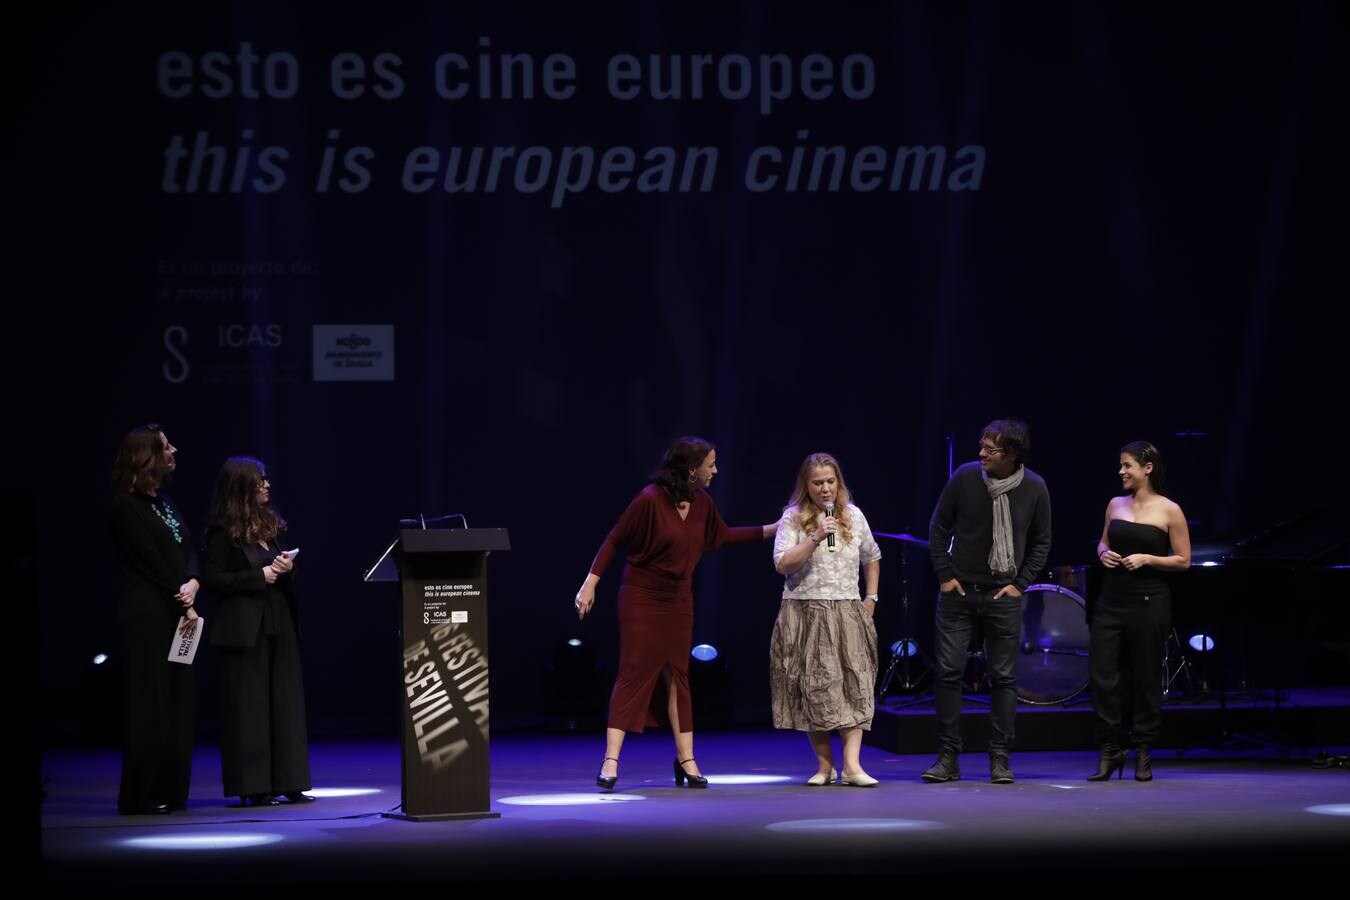 Gala de inauguración del Festival de Cine Europeo de Sevilla, en imágenes